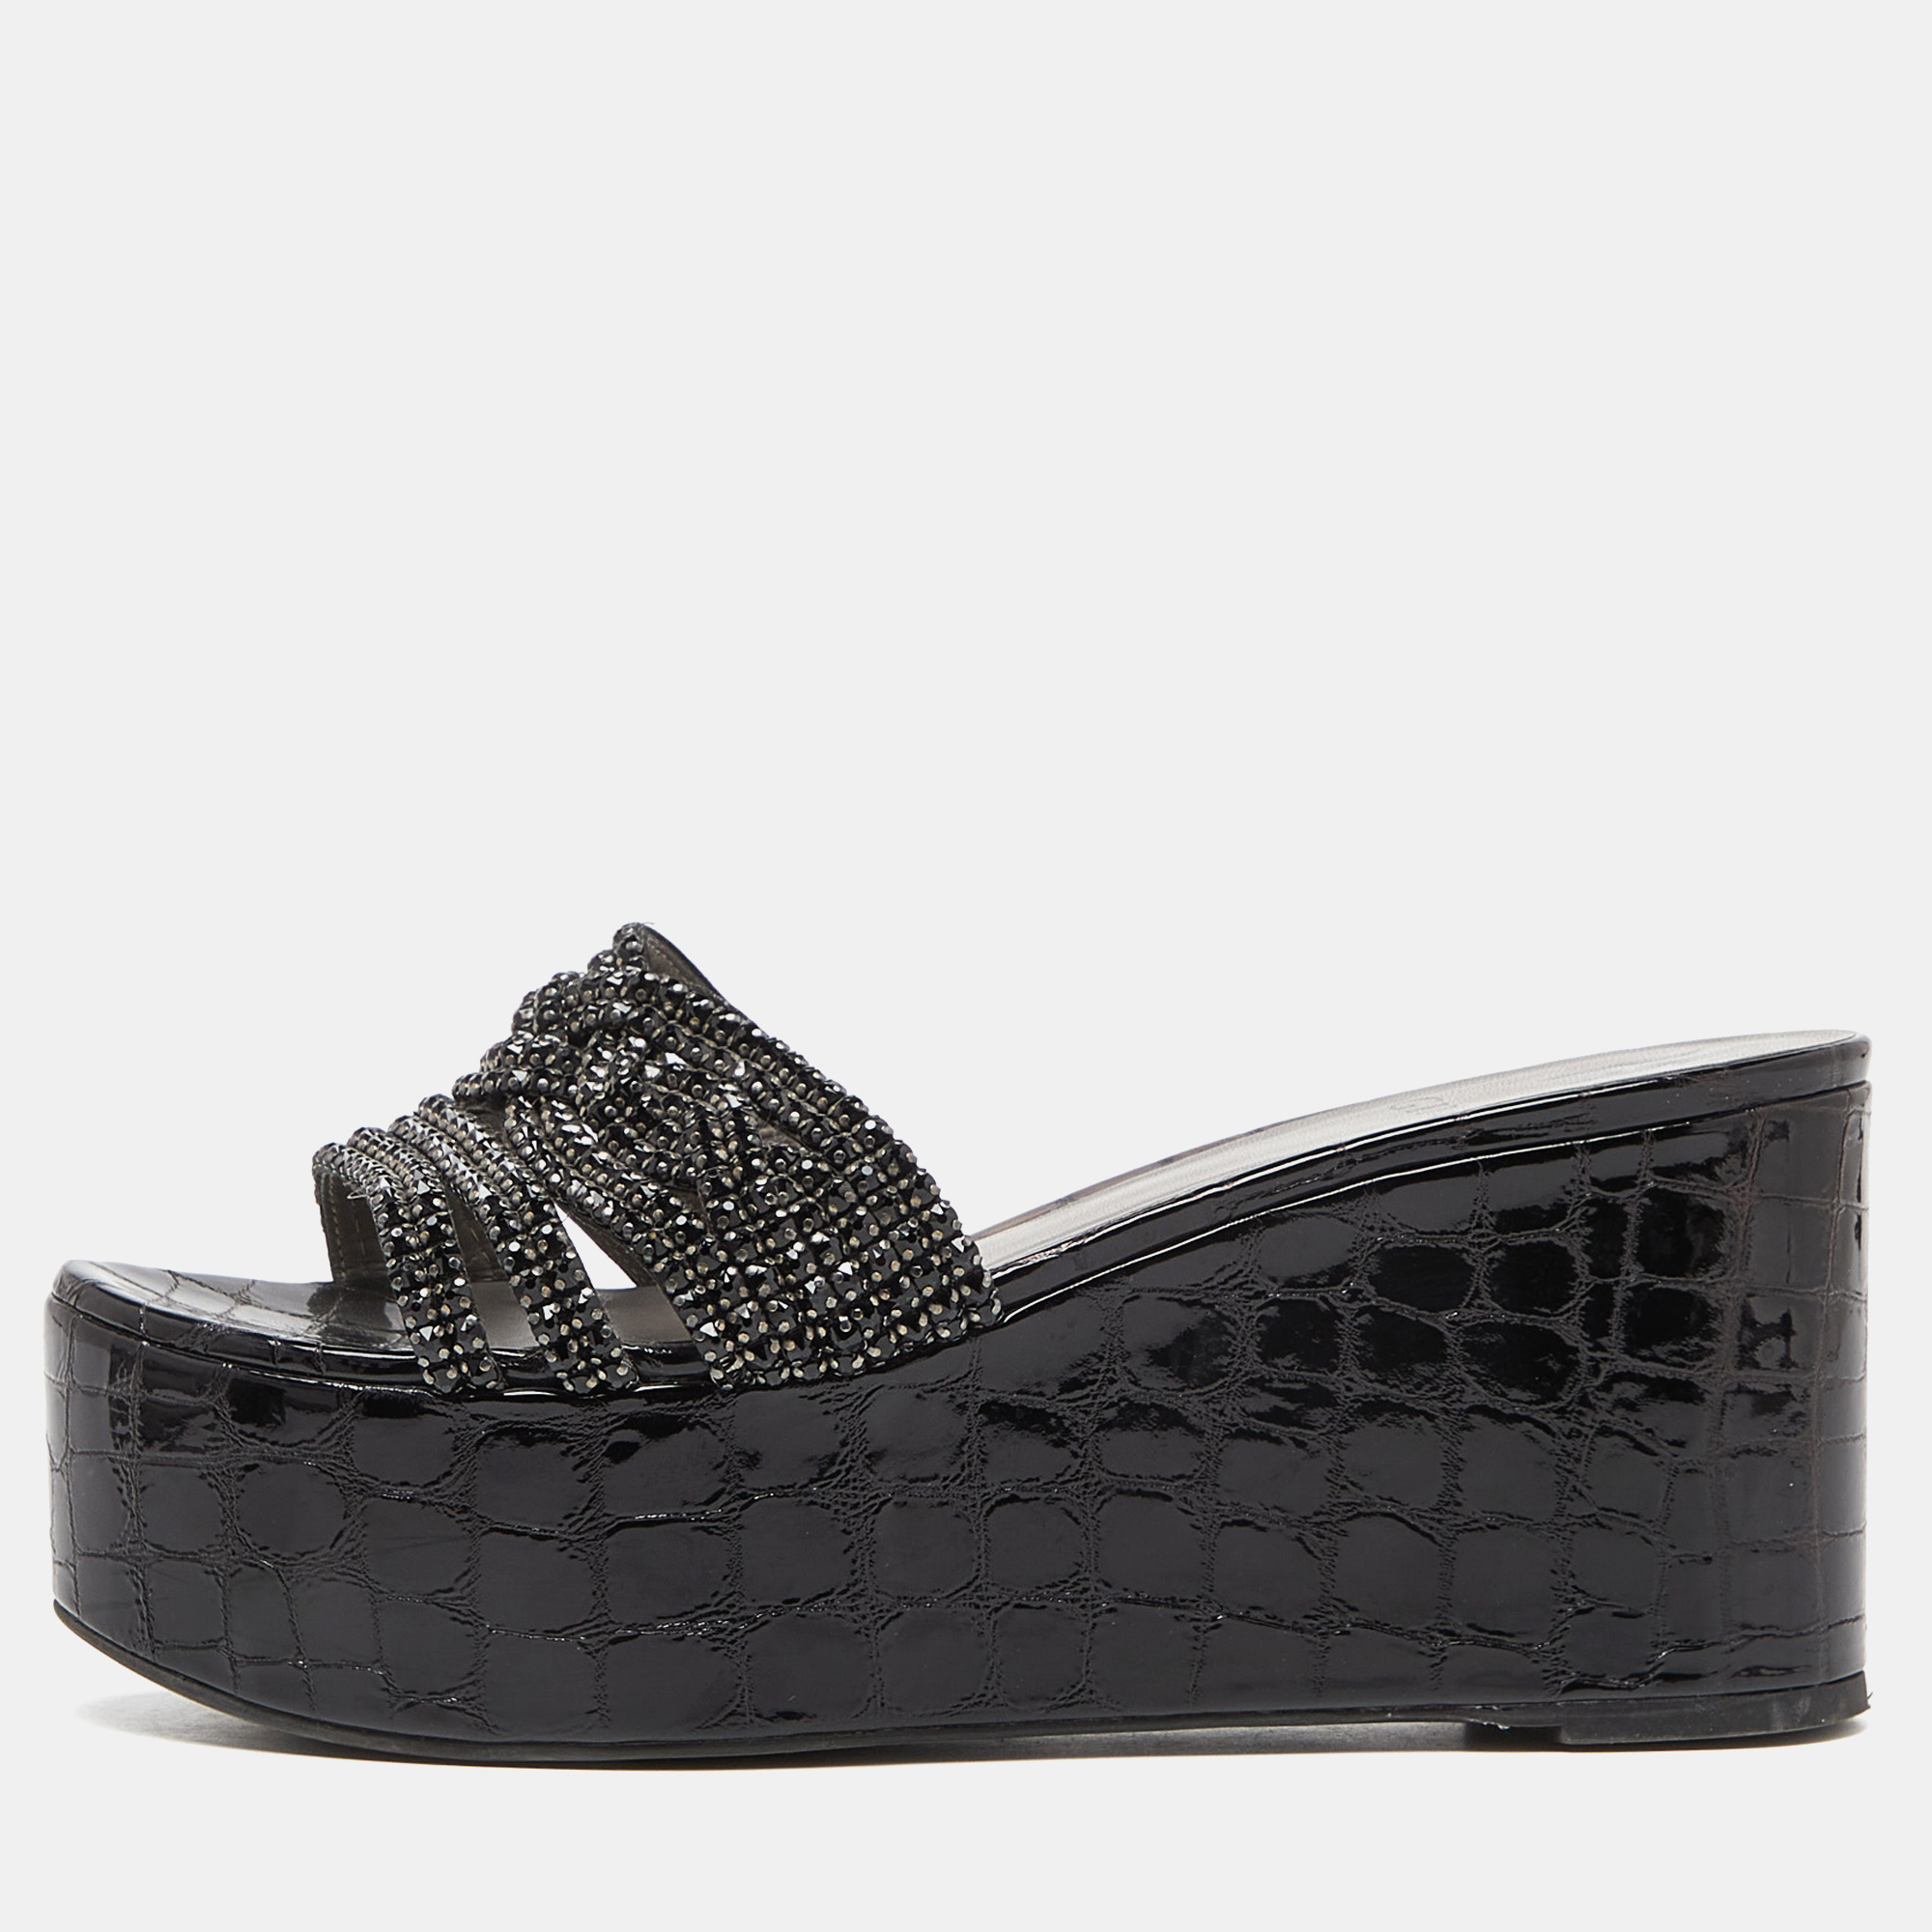 Gina black patent leather crystal embellished wedge platform sandals size 38.5